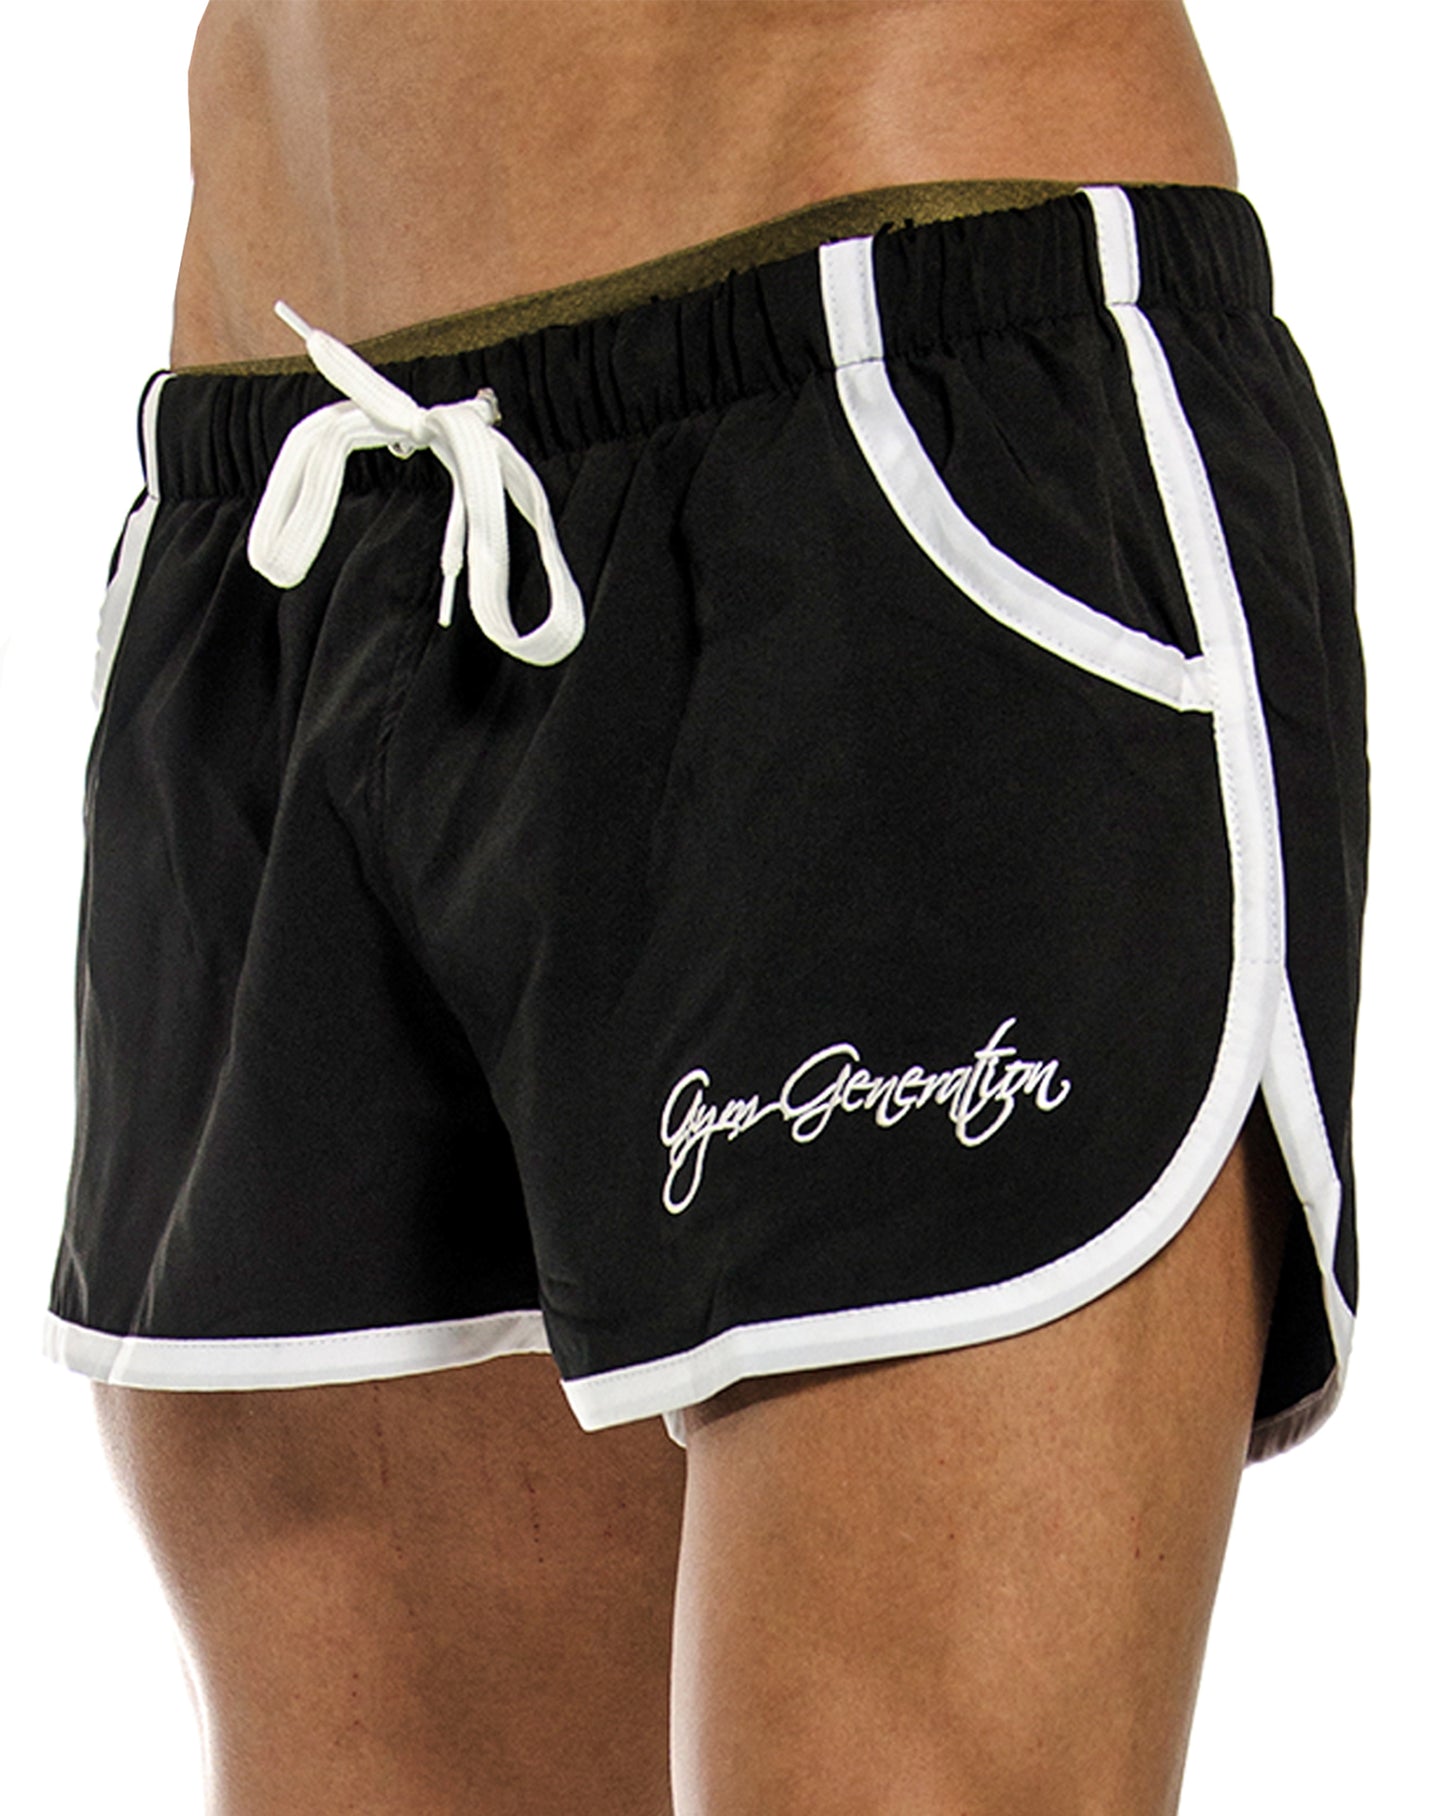 Hochwertige schwarze Gym Shorts von Gym Generation mit innovativem Netzstoff-Innenfutter, perfekt für Training und Strand